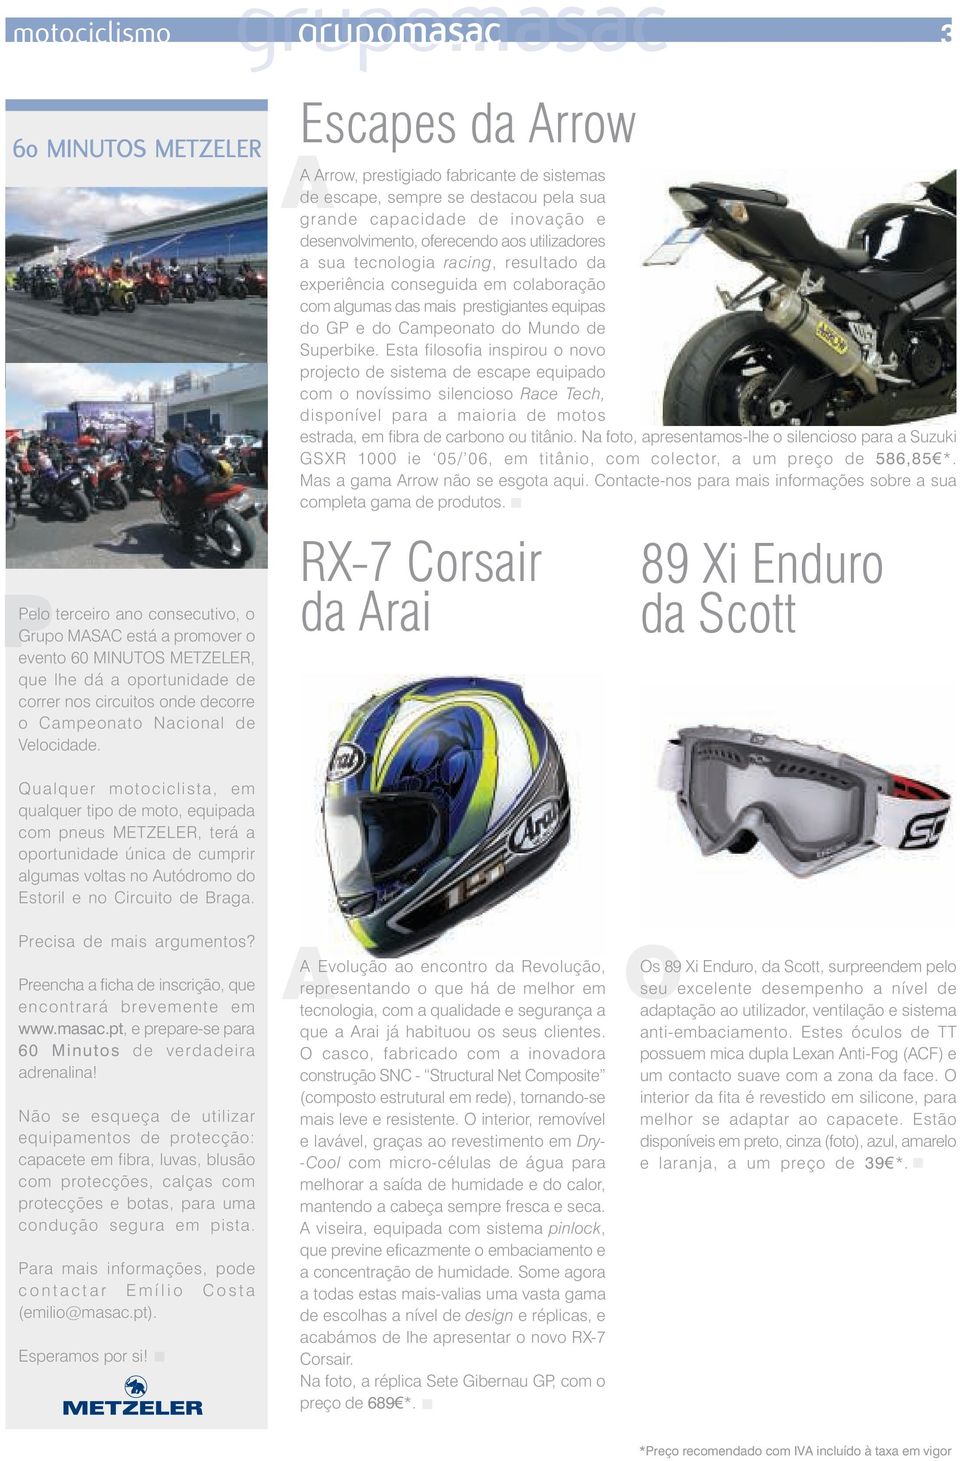 Qualquer motociclista, em qualquer tipo de moto, equipada com pneus METZELER, terá a oportunidade única de cumprir algumas voltas no Autódromo do Estoril e no Circuito de Braga.